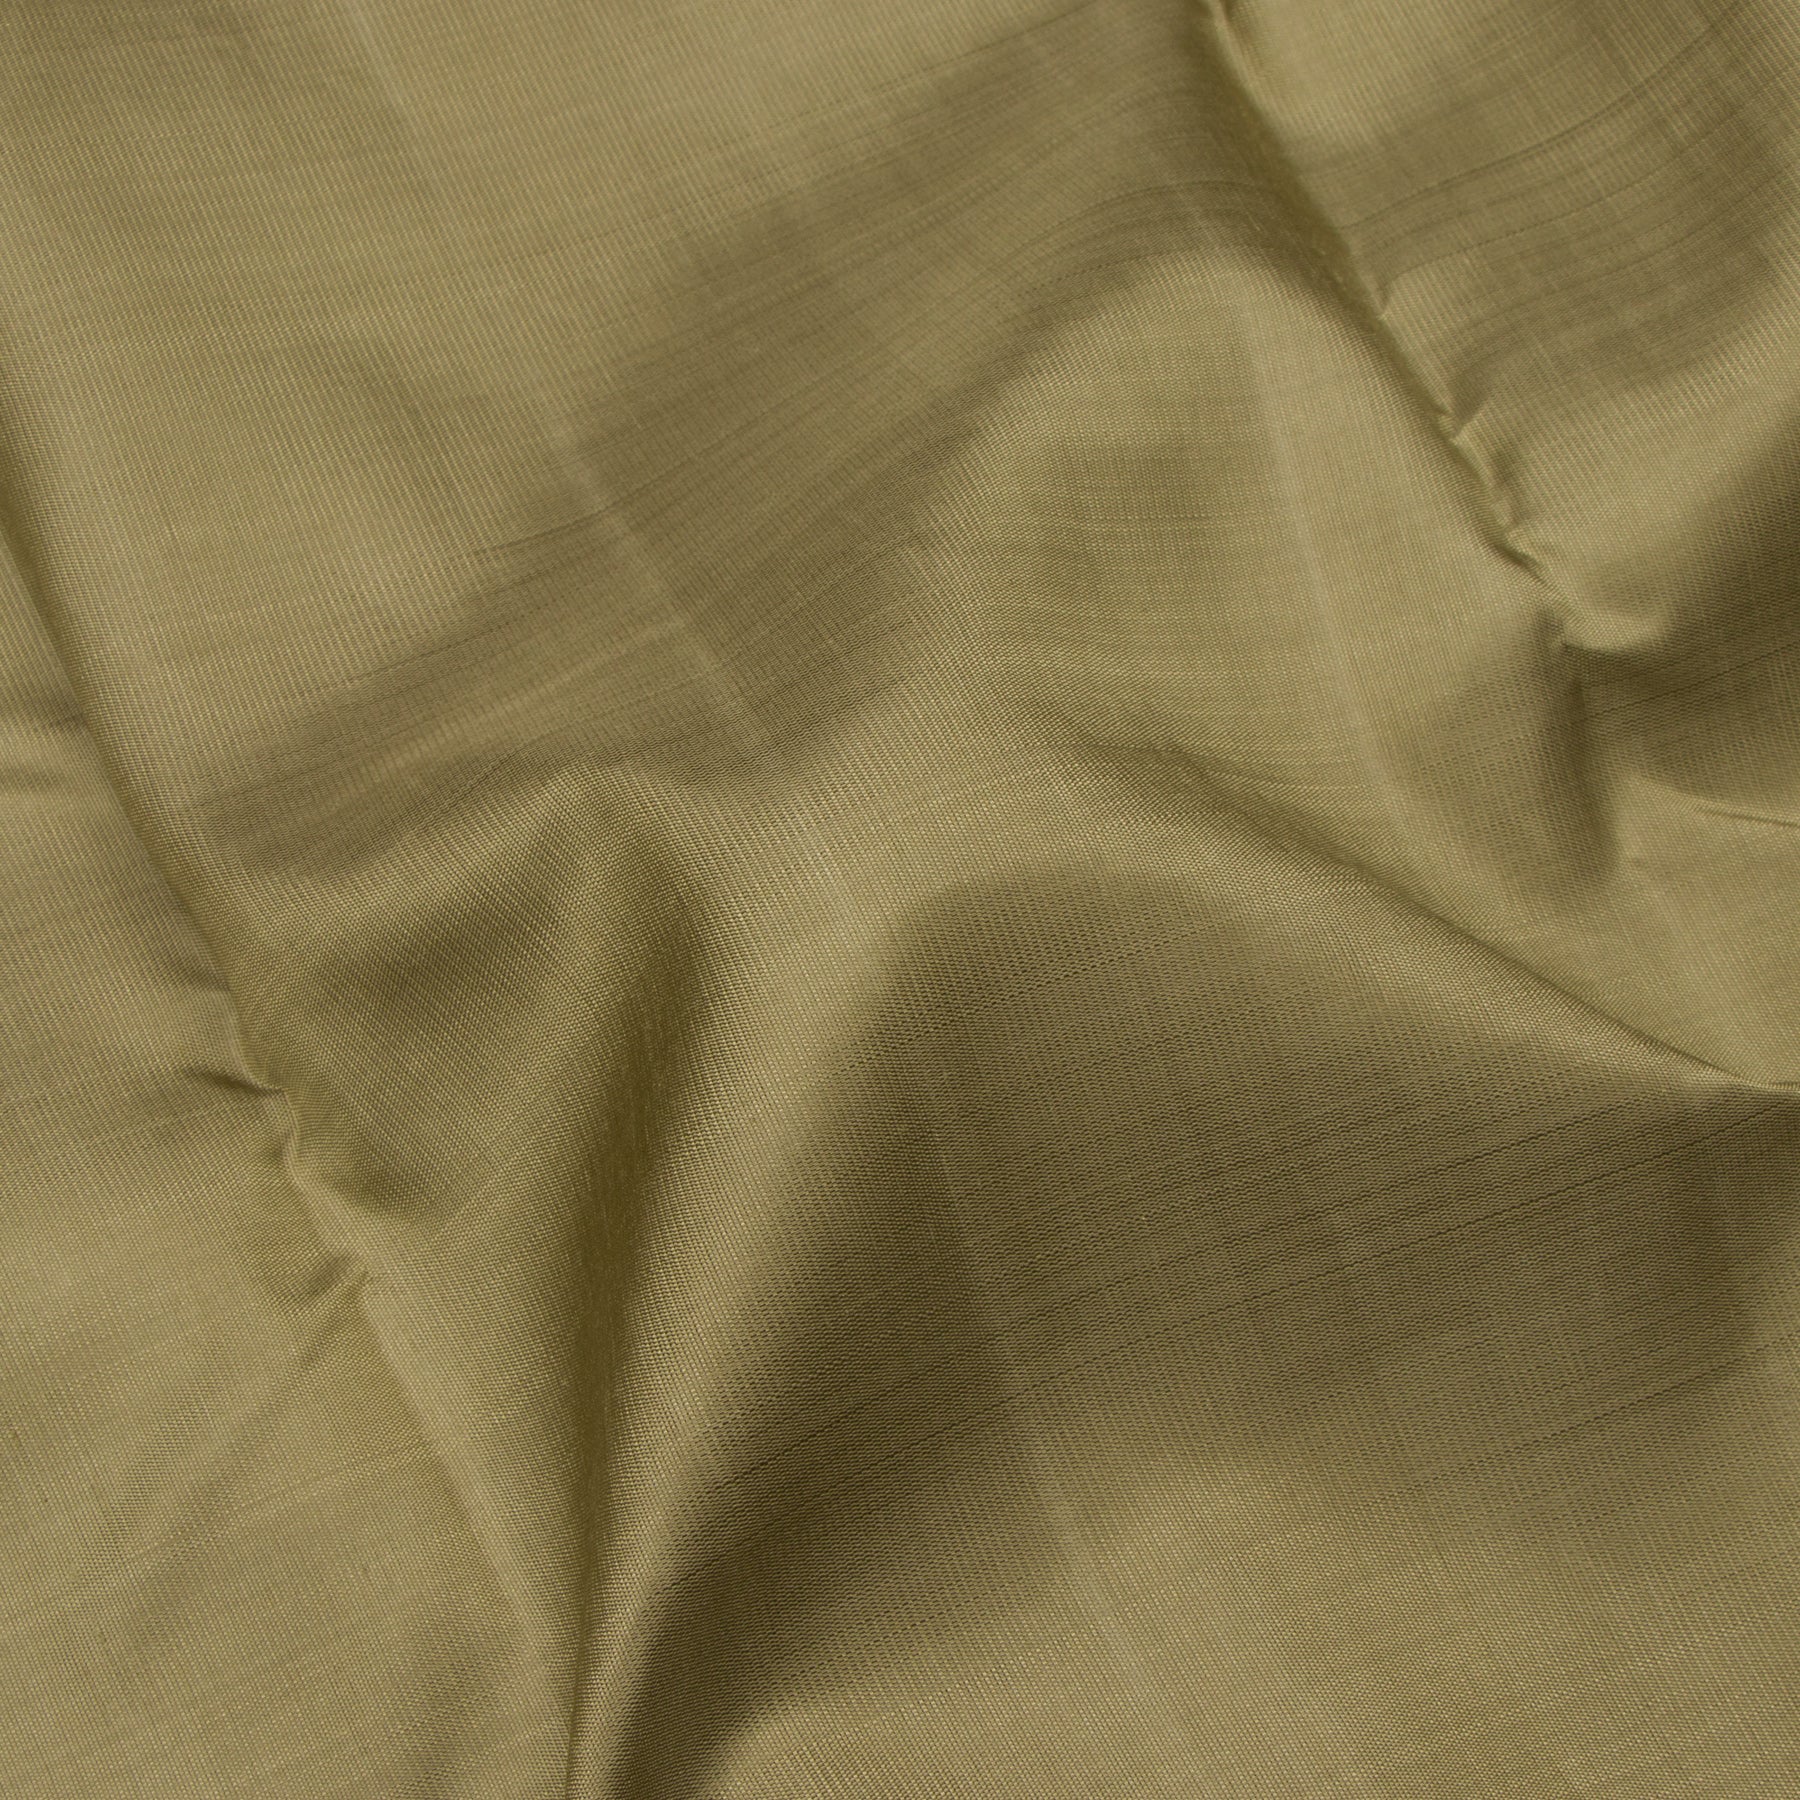 Kanakavalli Kanjivaram Silk Sari 23-595-HS001-06596 - Fabric View